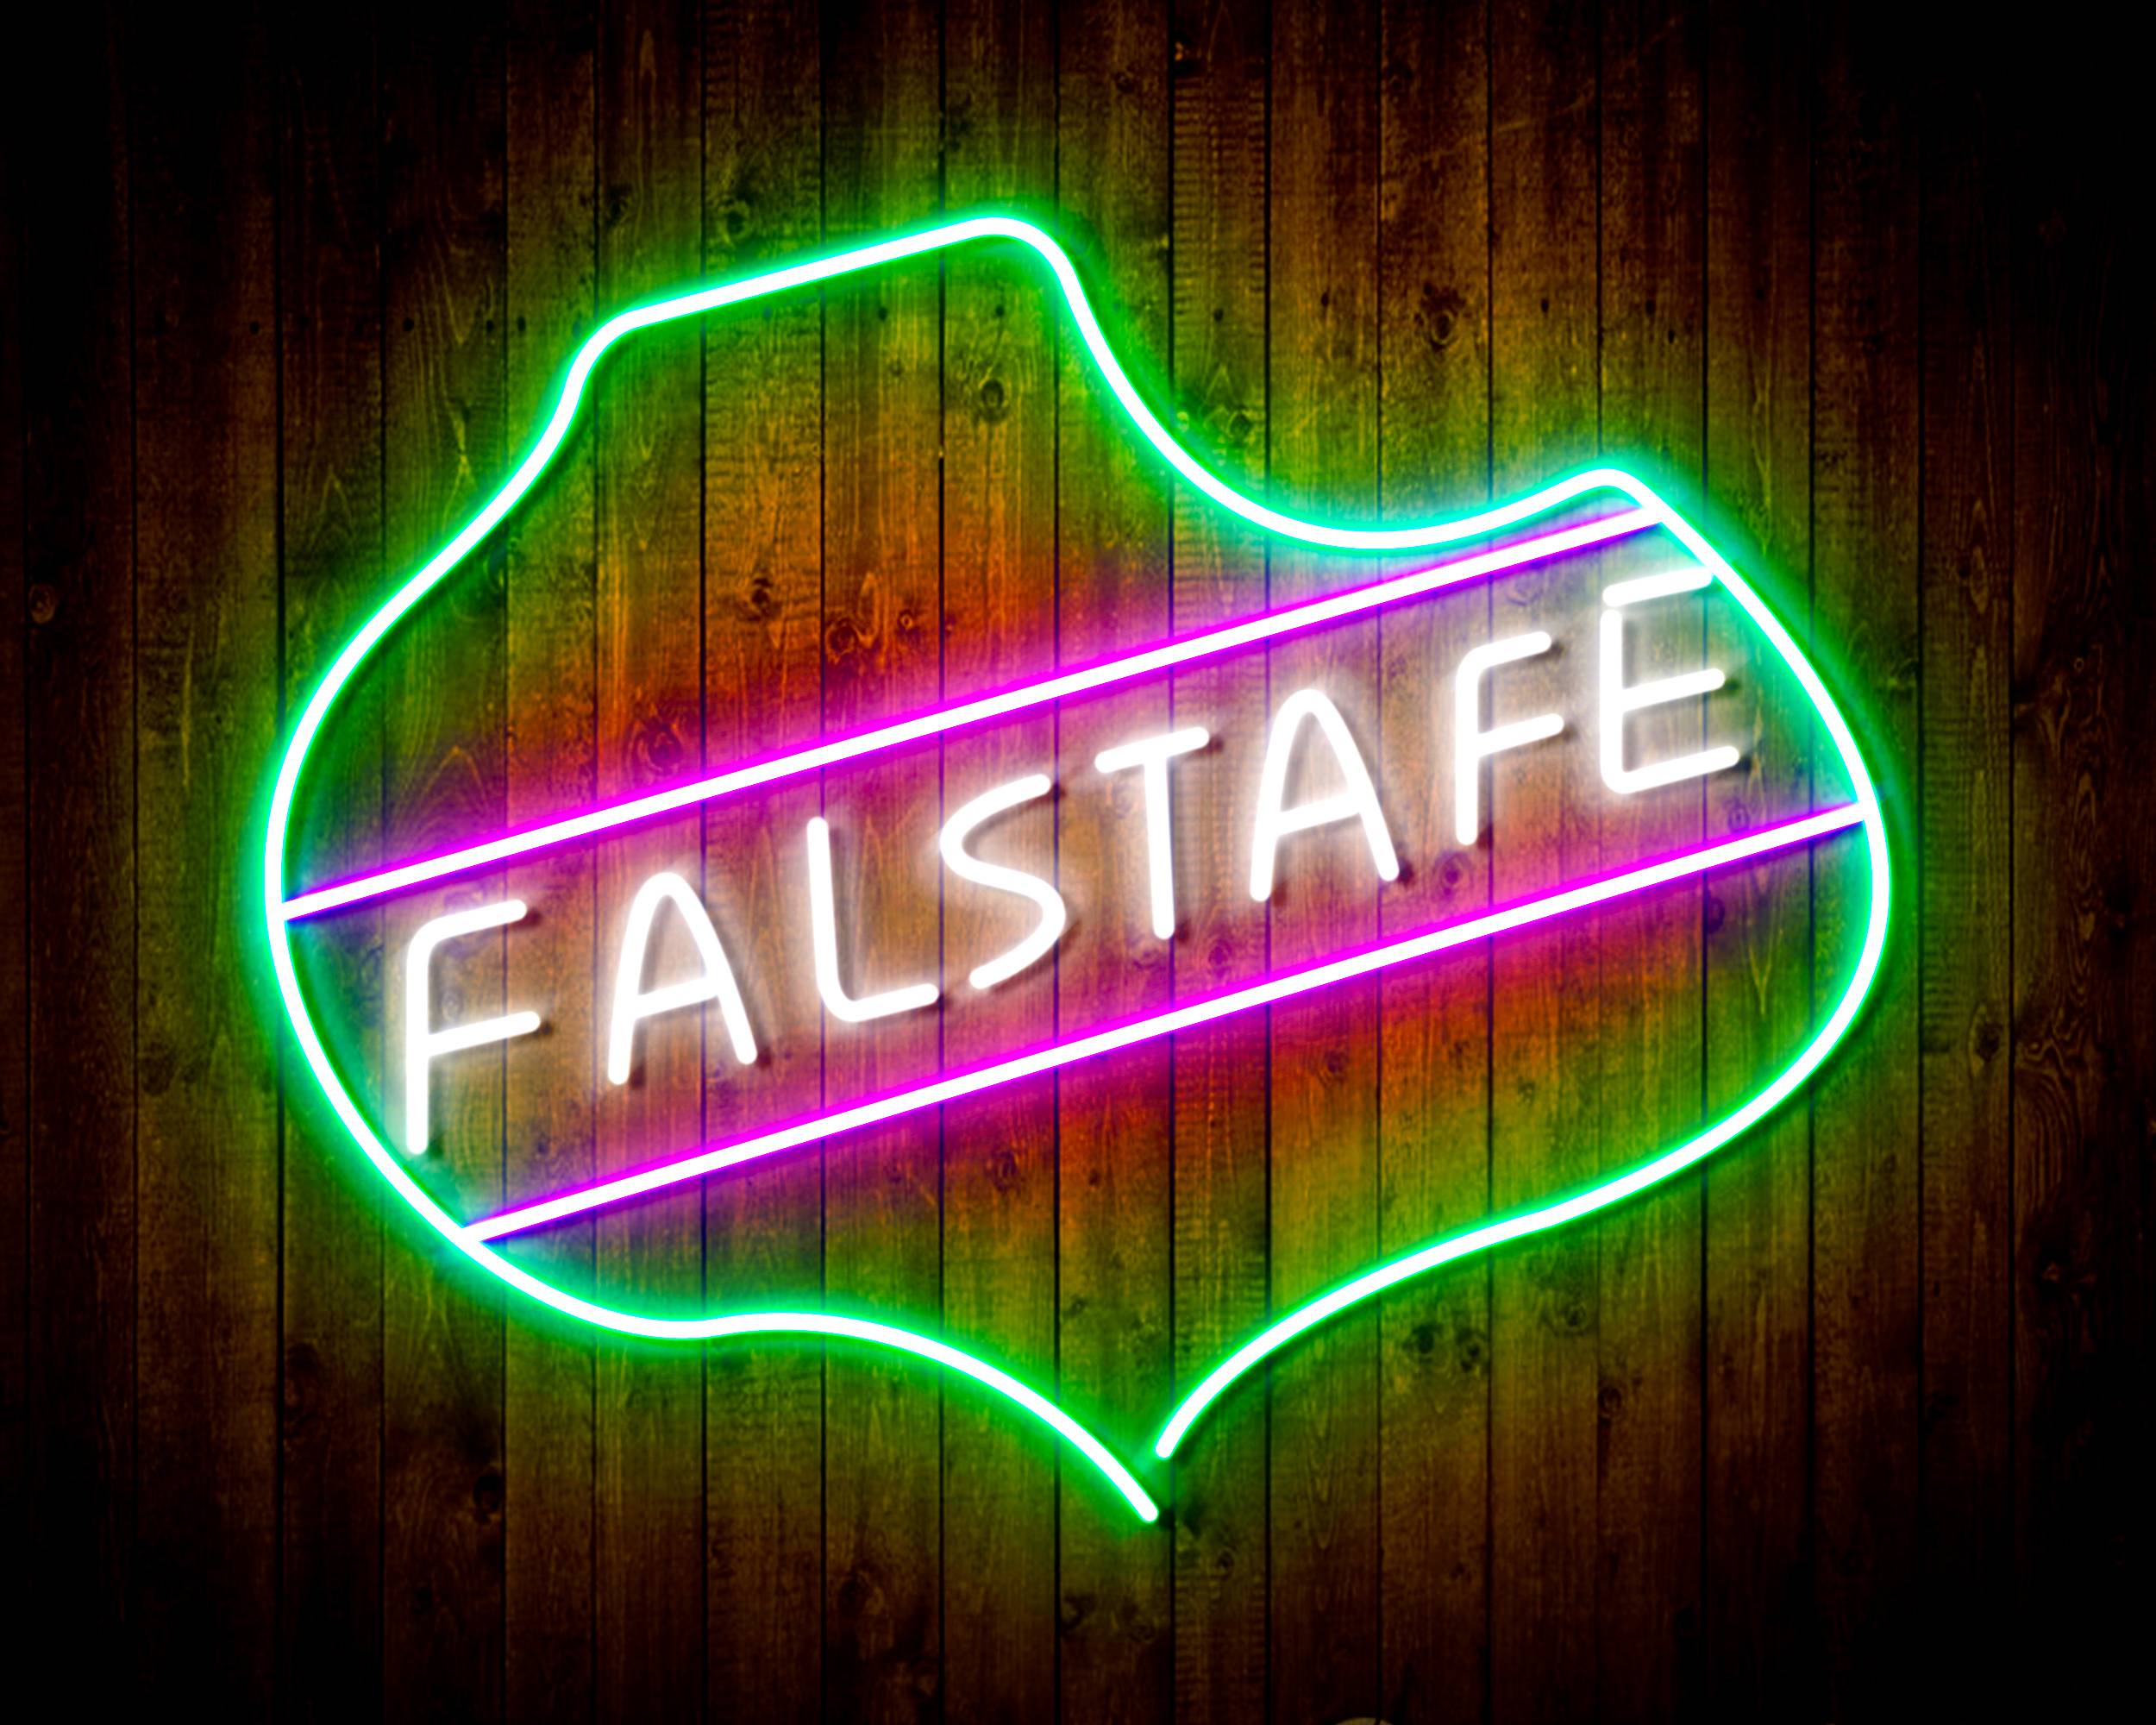 Falstafe Handmade Neon Flex LED Sign